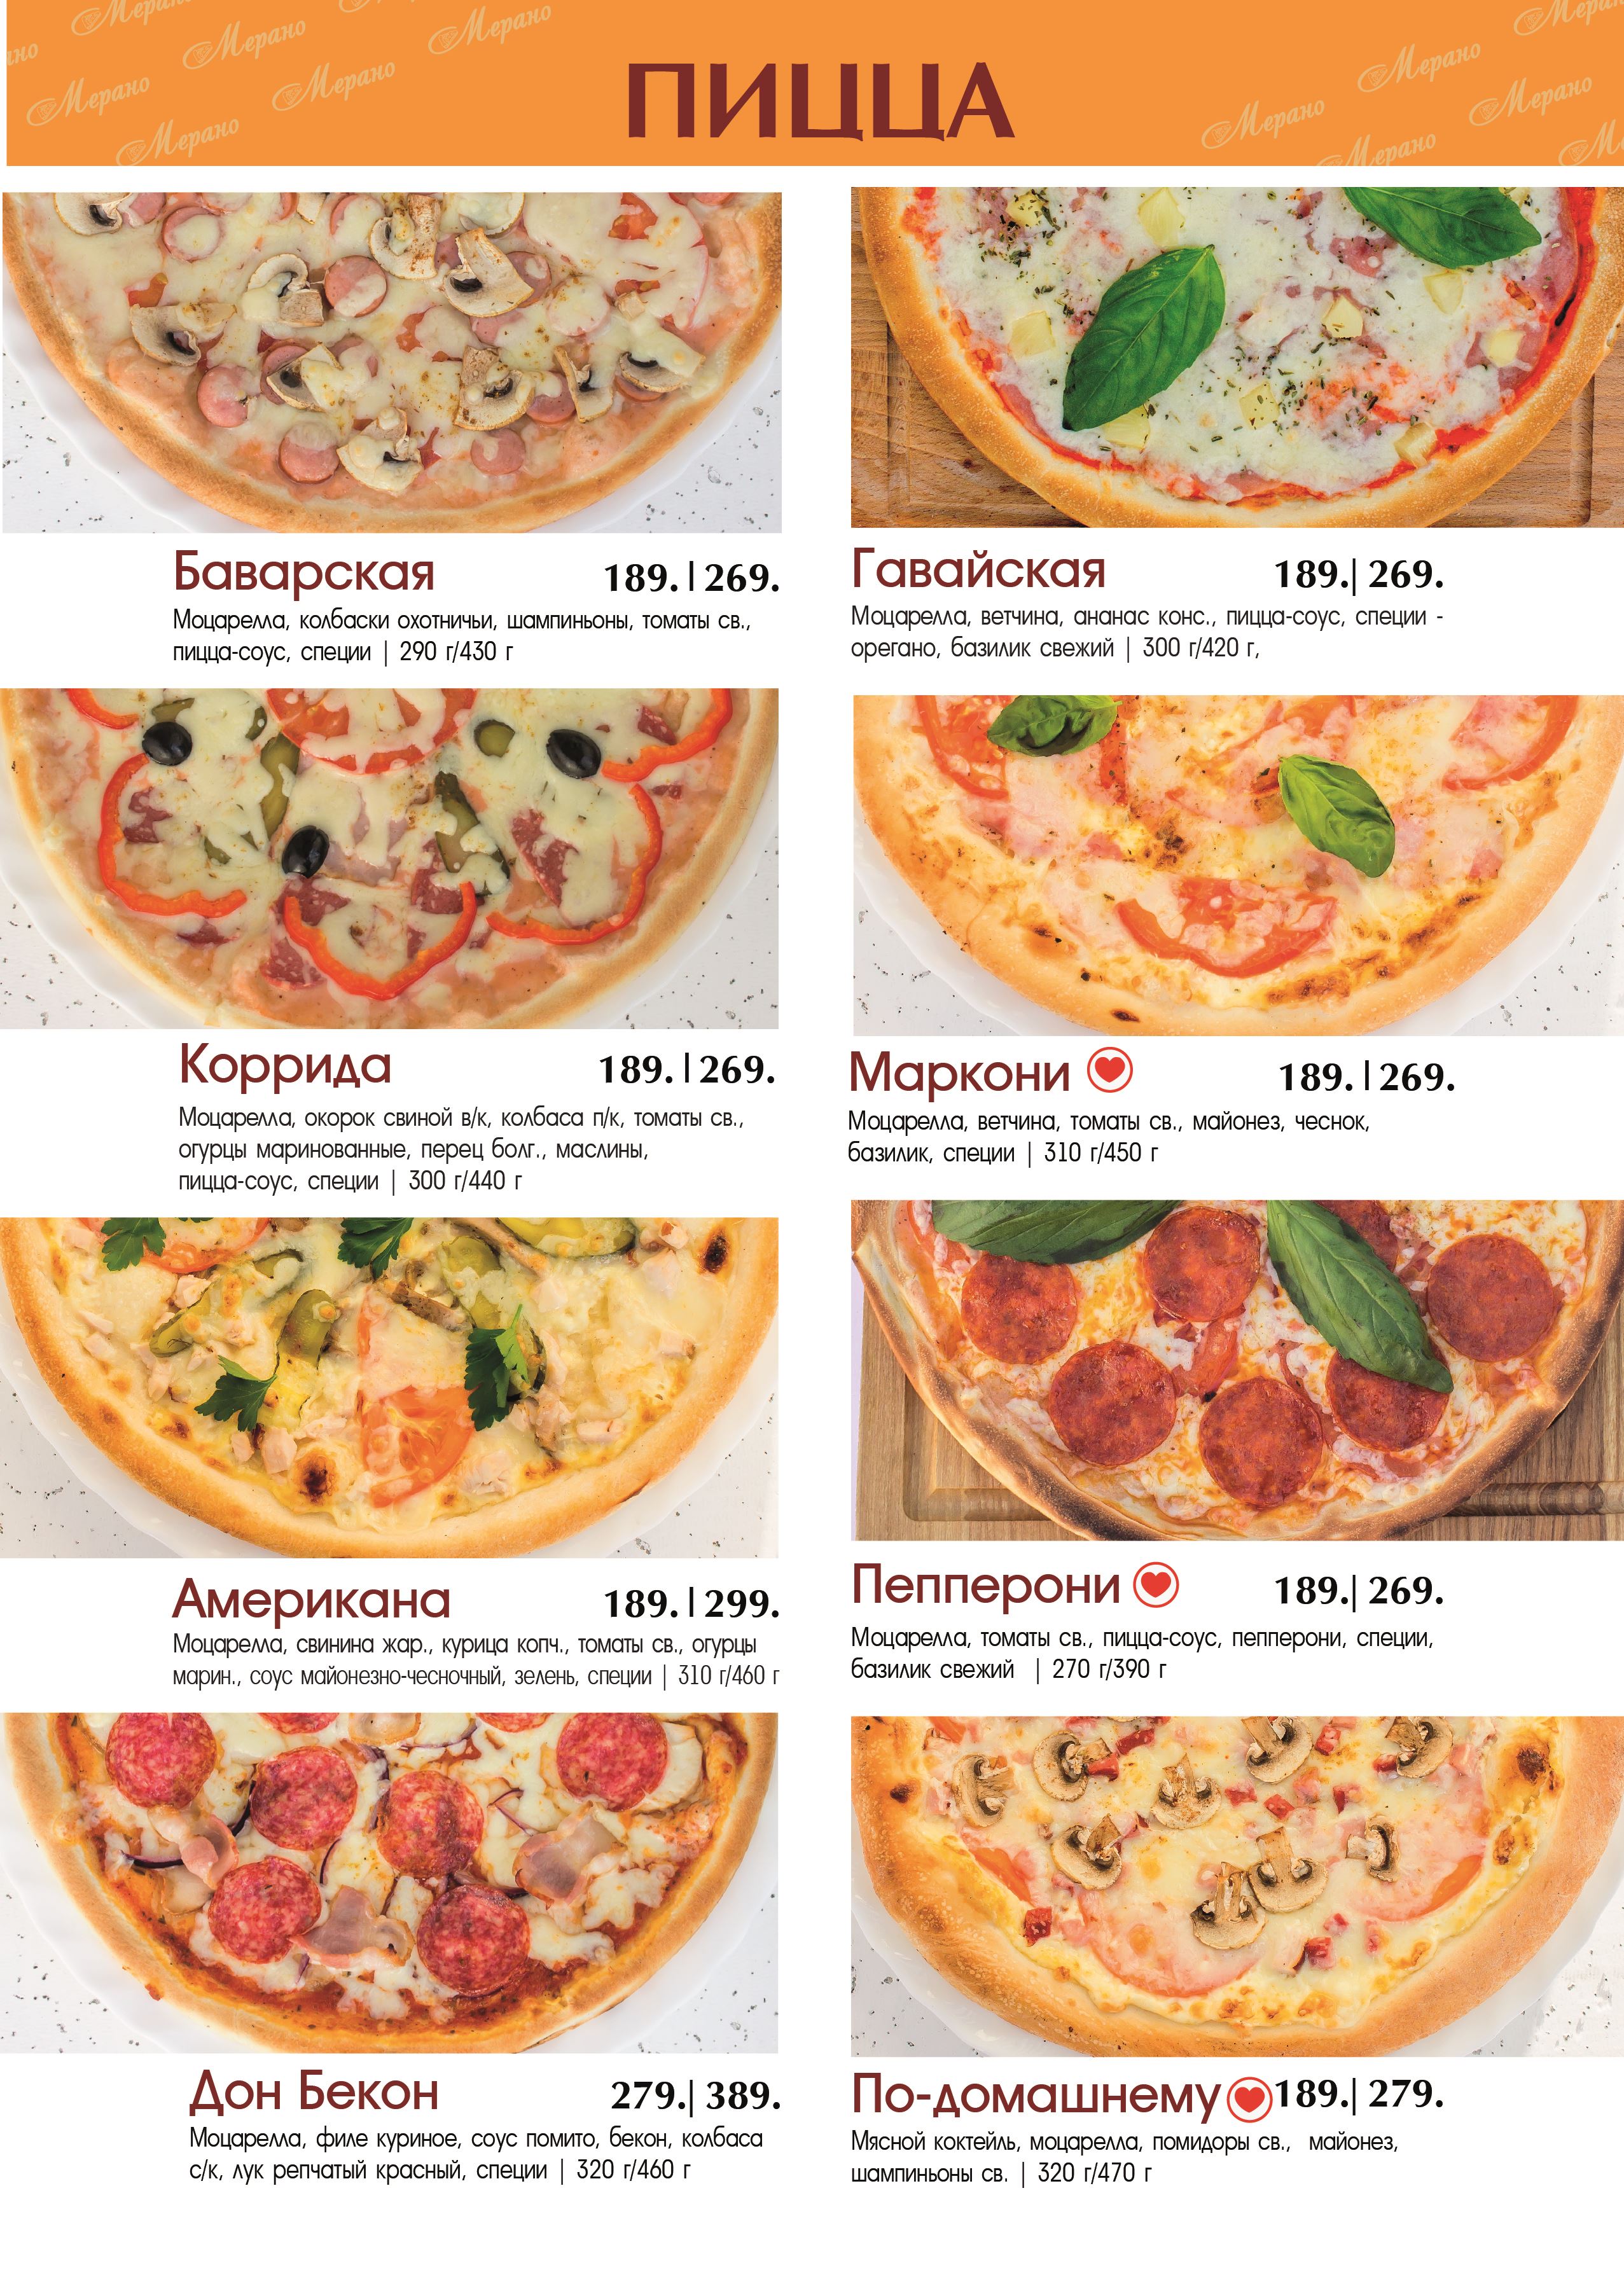 ассортимент пиццы в картинках и рецепты с фото фото 5